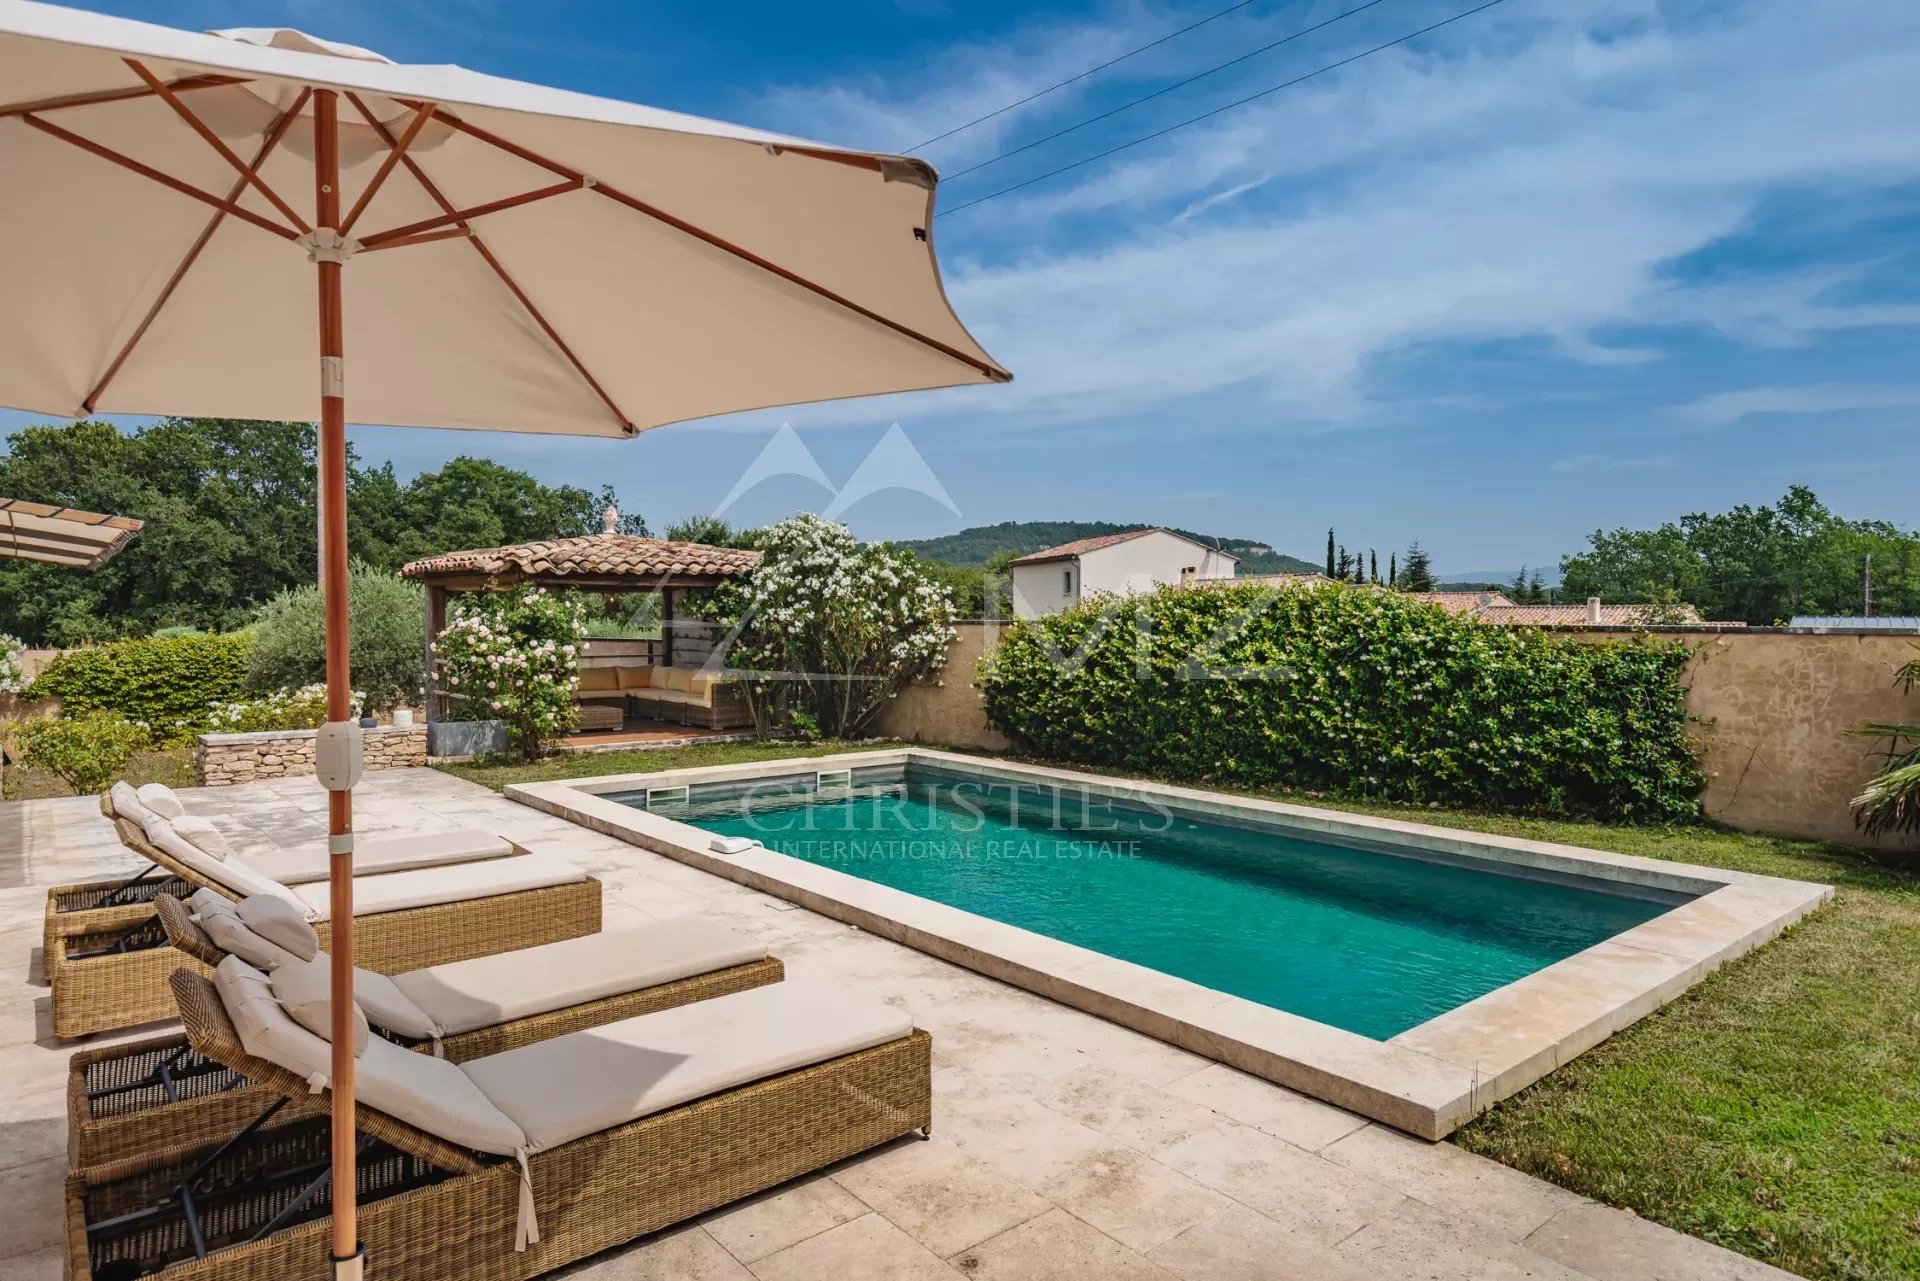 Luberon - Belle maison de vacances avec piscine chauffée